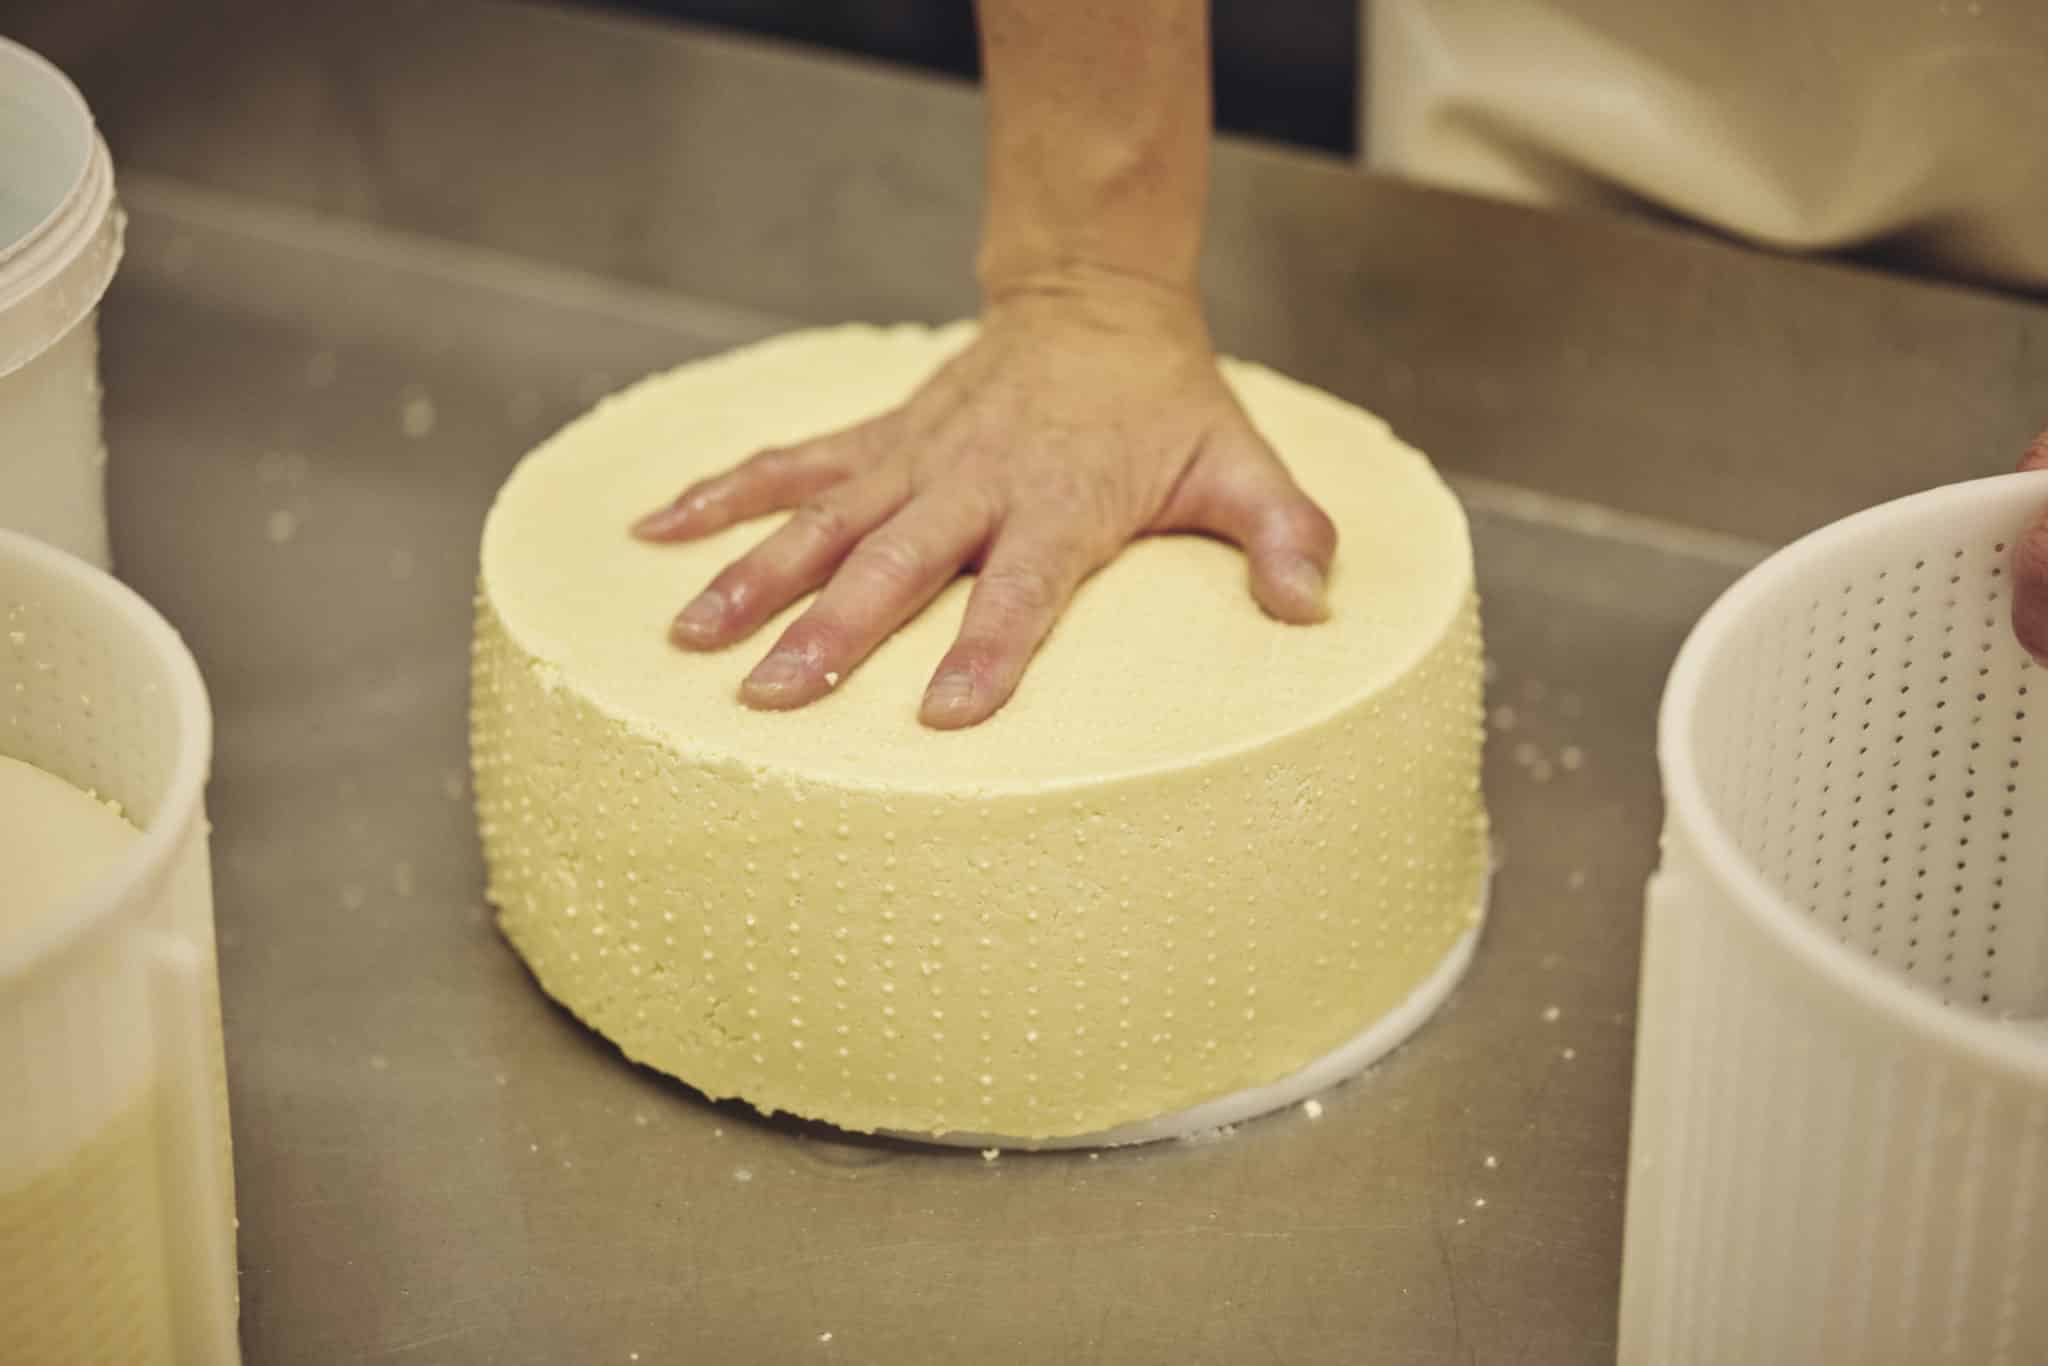 Käsemeisterin drückt in einem Käse ihre Hand rein, um die Konsistenz zu zeigen.